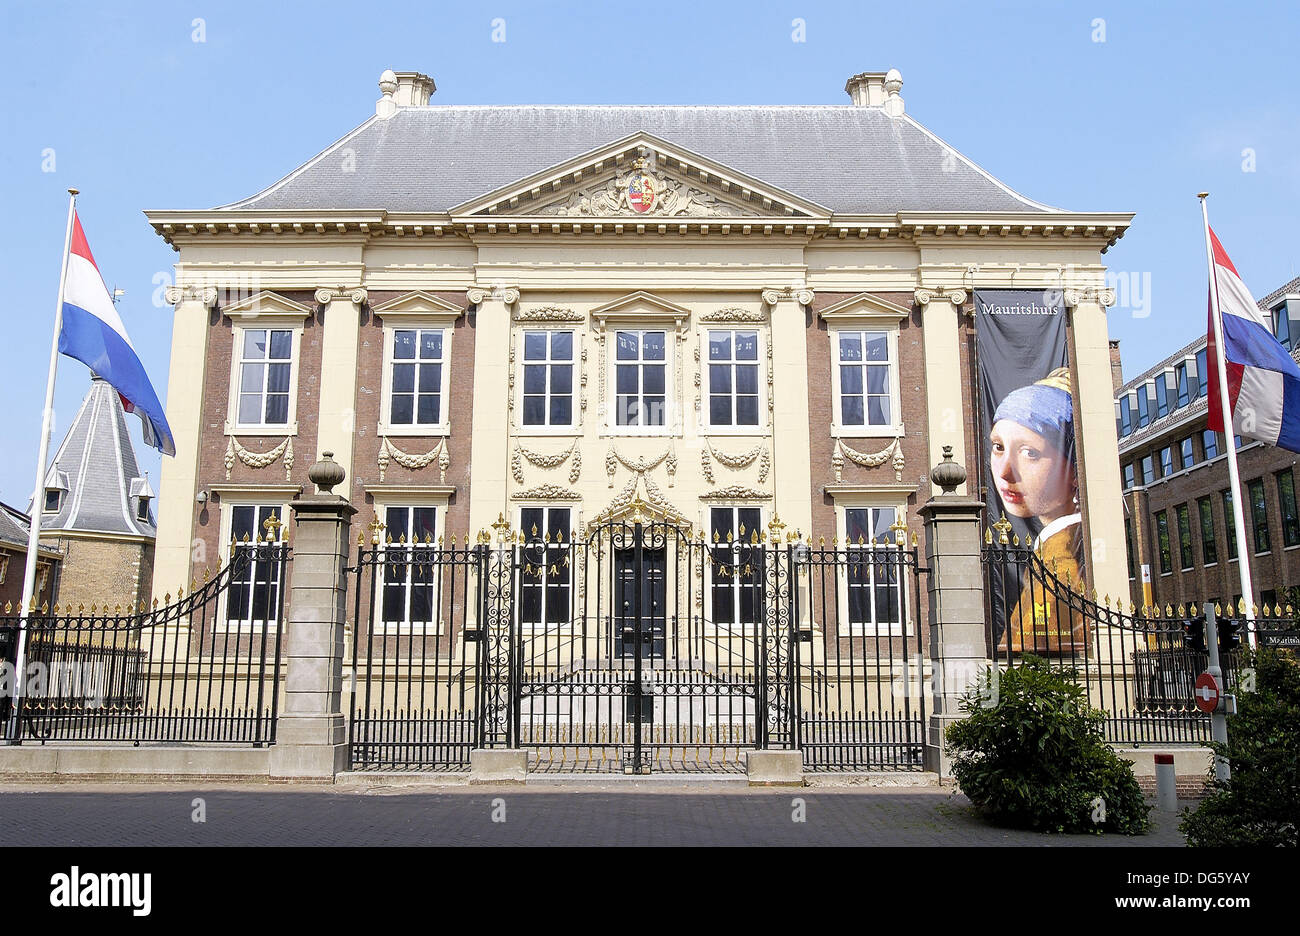 Royal Picture Gallery, ubicada en el edificio conocido como la Mauritshuis (1633-44). La Haya. Países Bajos Foto de stock